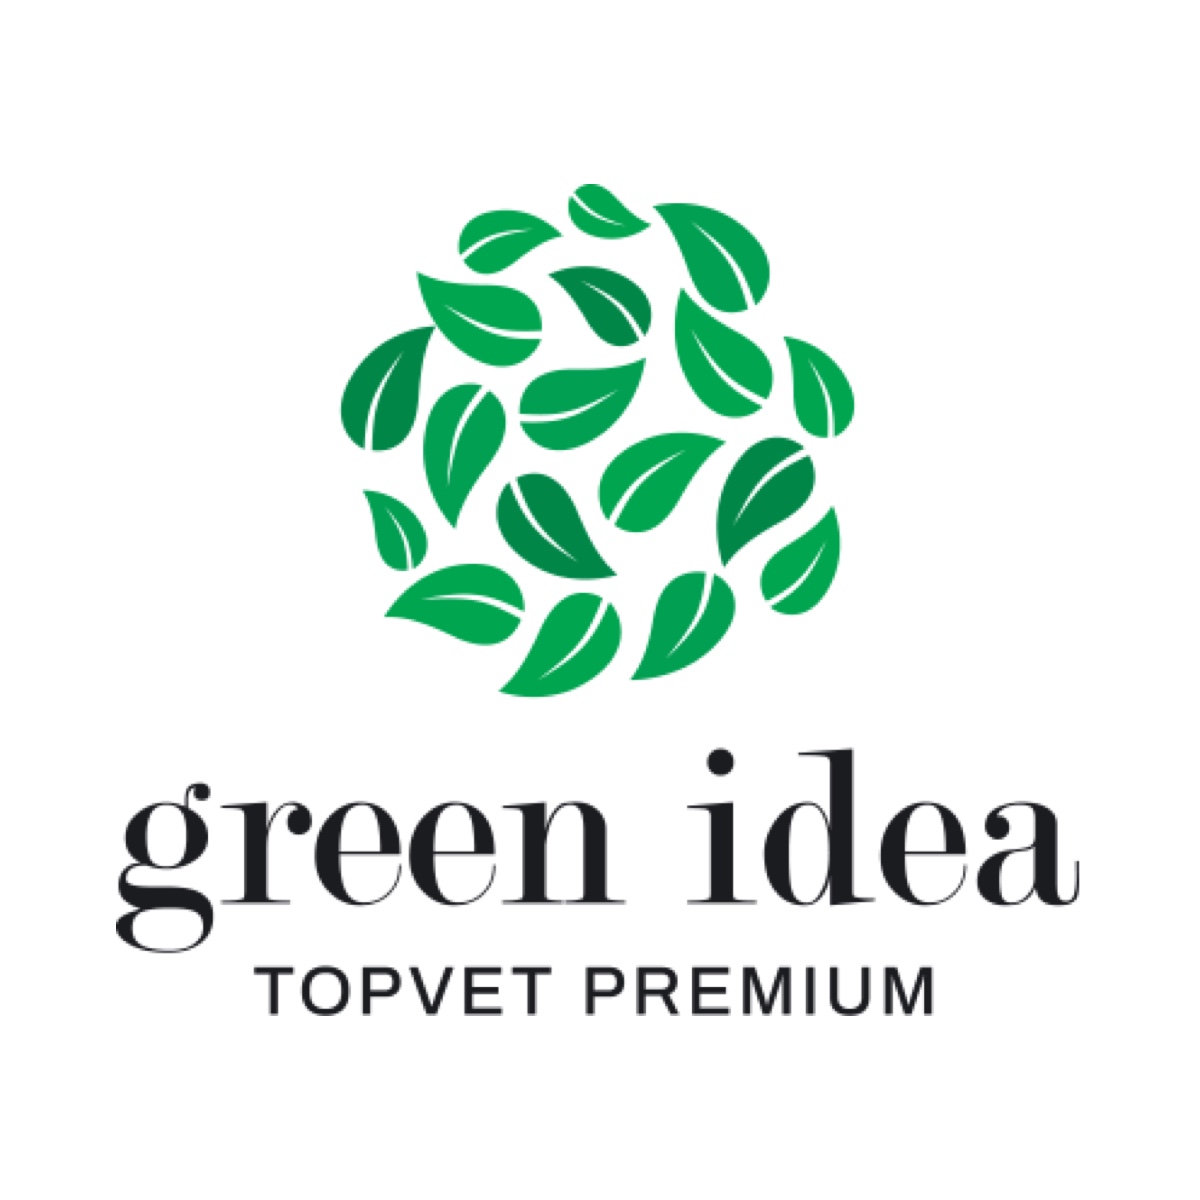 Green idea s.r.o.